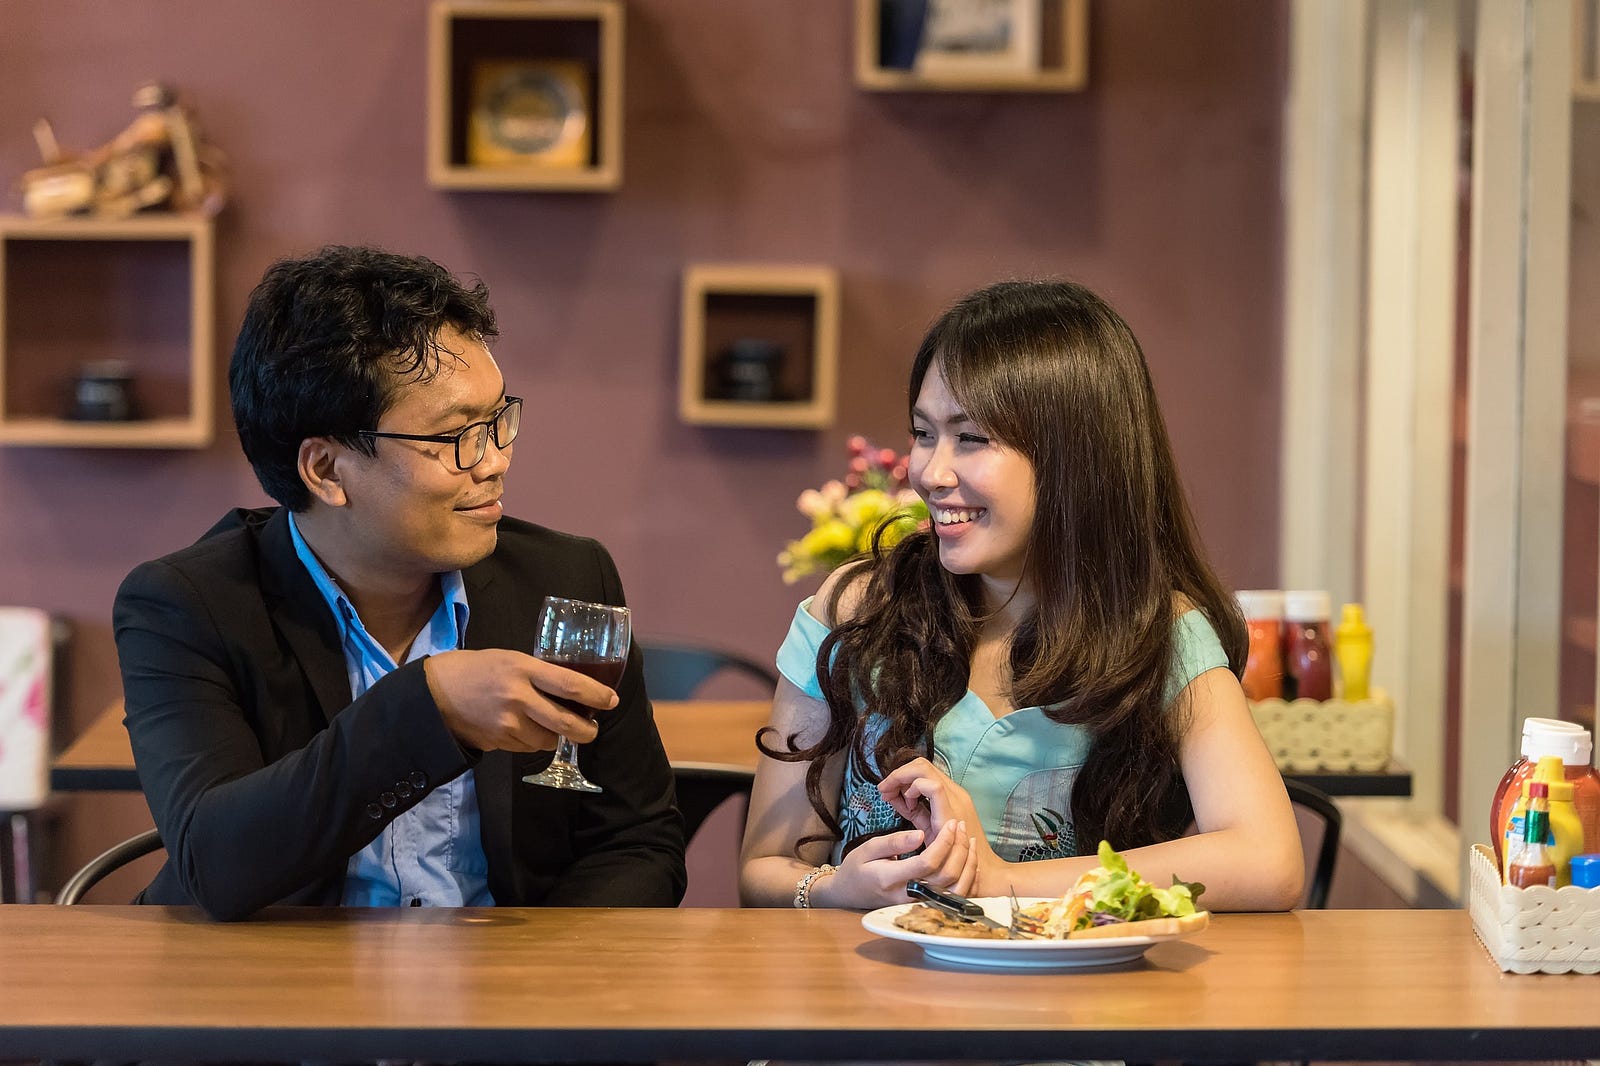 Hong Kong dating website Ezra Fitz en aria dating in het echte leven